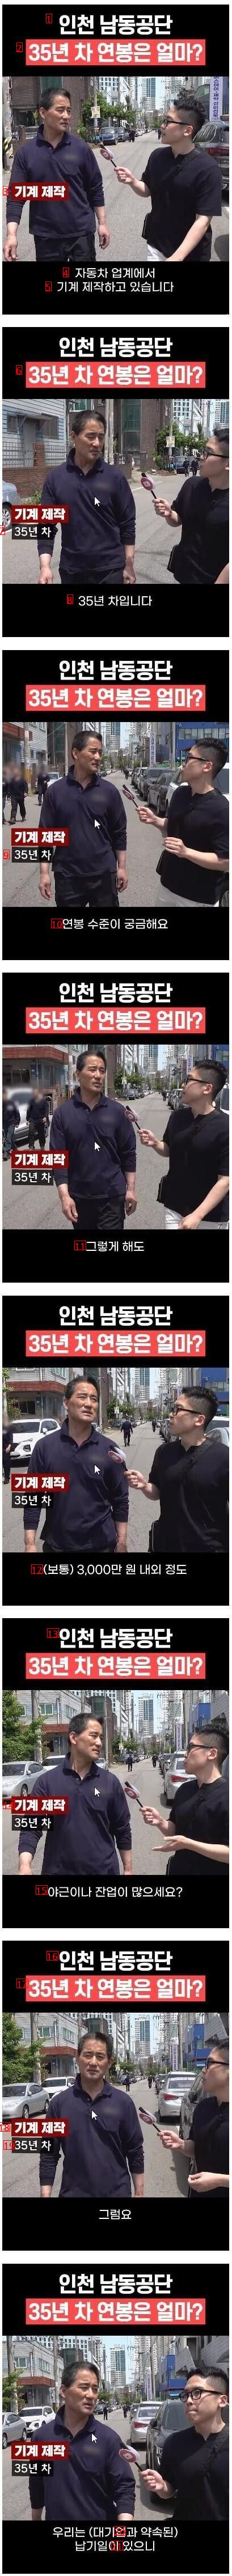 커뮤니티 사이에서 뜨거운 논란인 인천 남동공단 35년차 연봉 ㄷㄷㄷ...